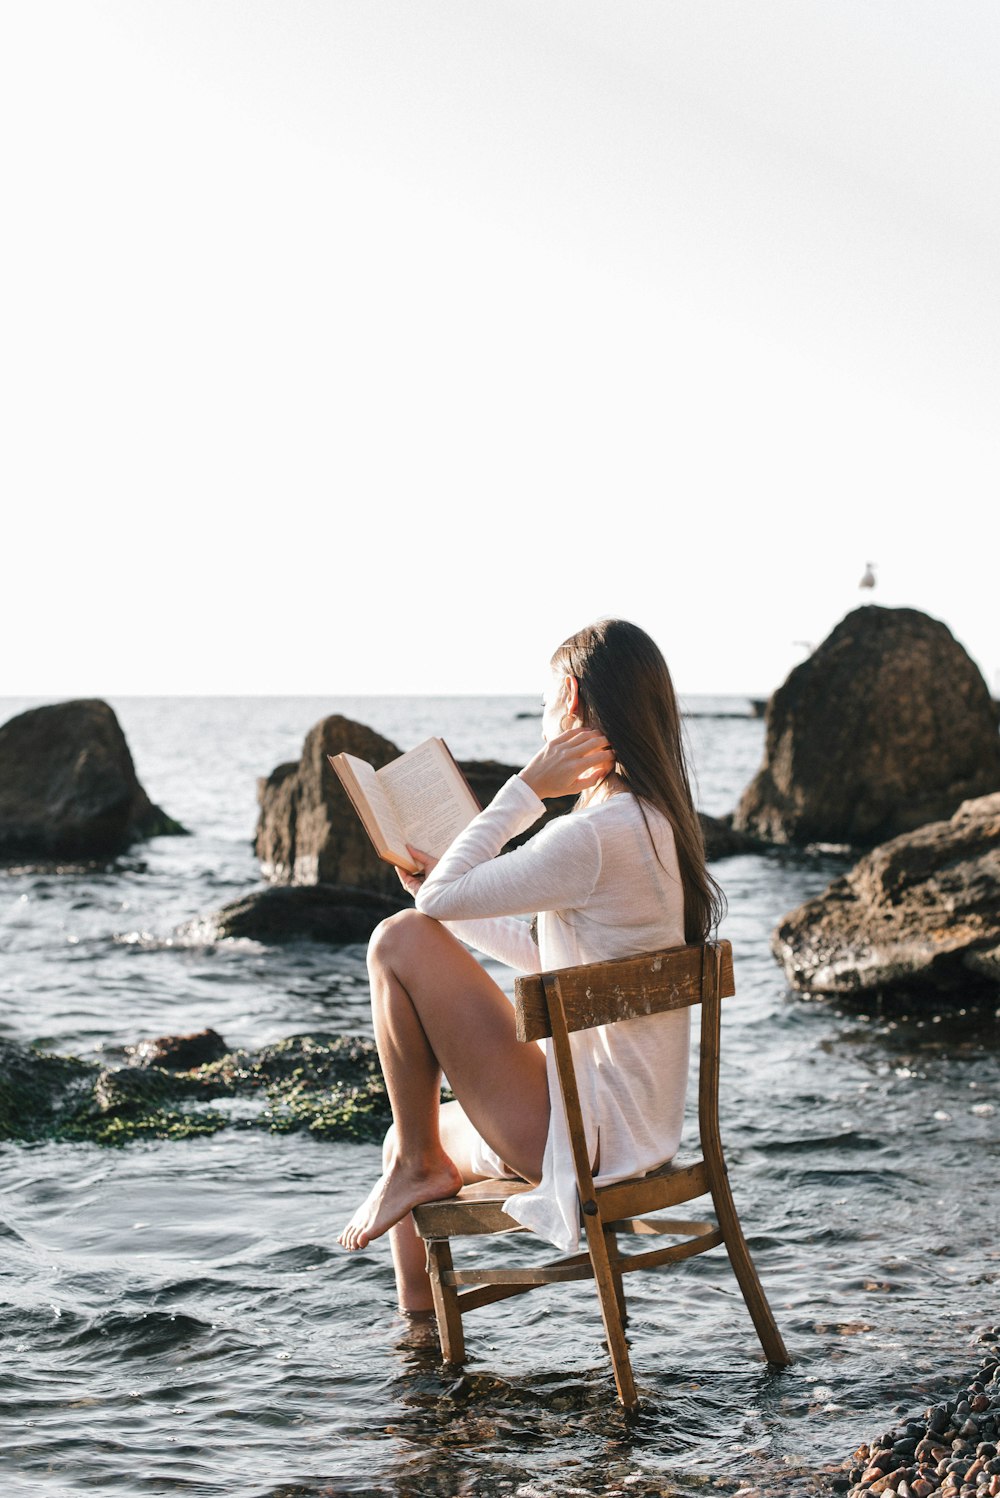 donna in abito bianco che si siede sulla sedia di legno marrone che legge il libro sulla spiaggia durante il giorno